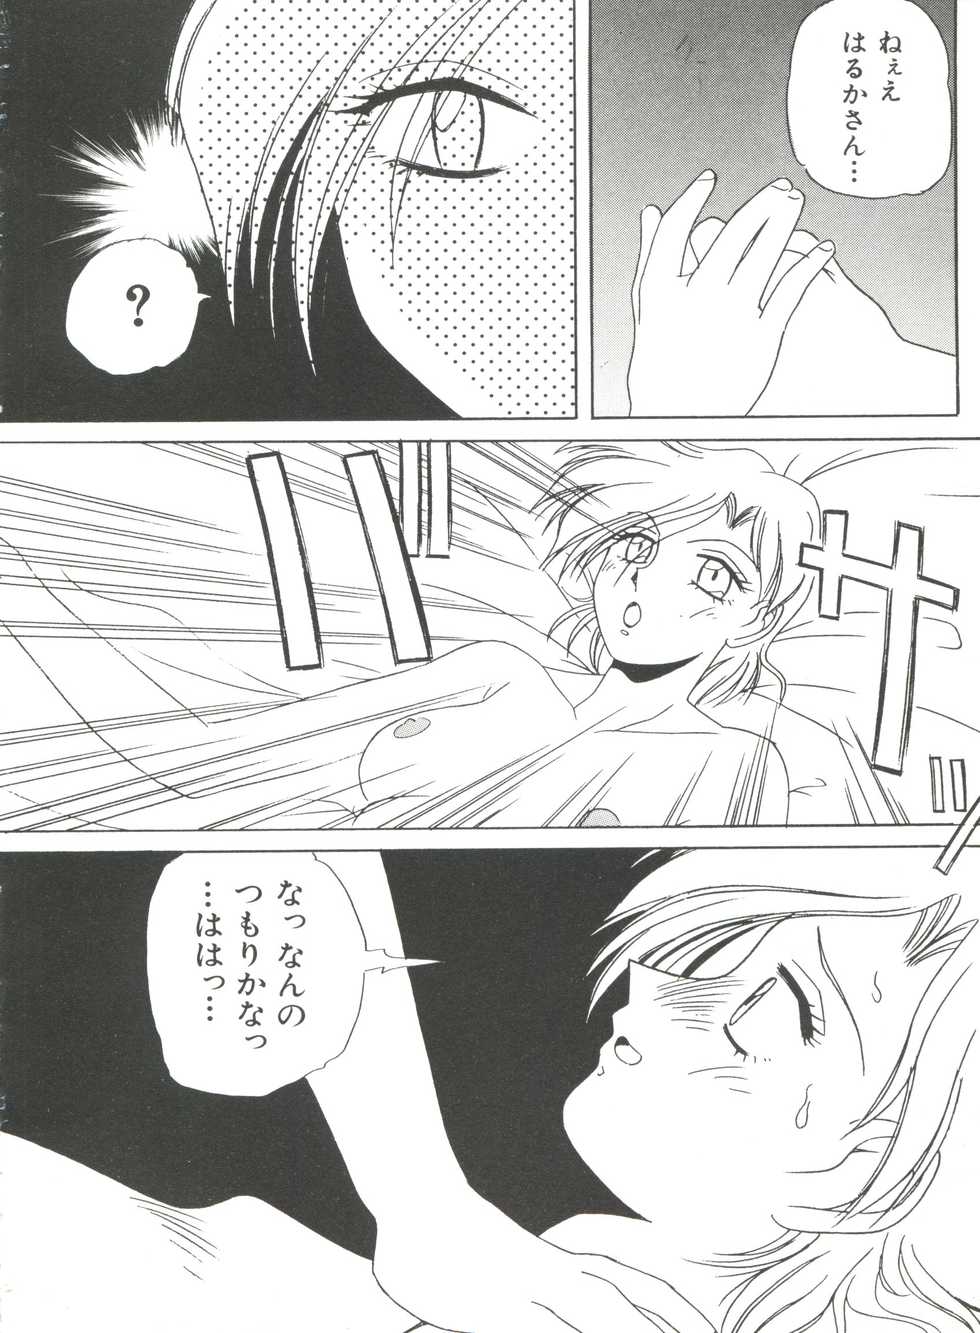 [Anthology] Bishoujo Doujinshi Anthology 8 - Moon Paradise 5 Tsuki no Rakuen (Bishoujo Senshi Sailor Moon) - Page 35